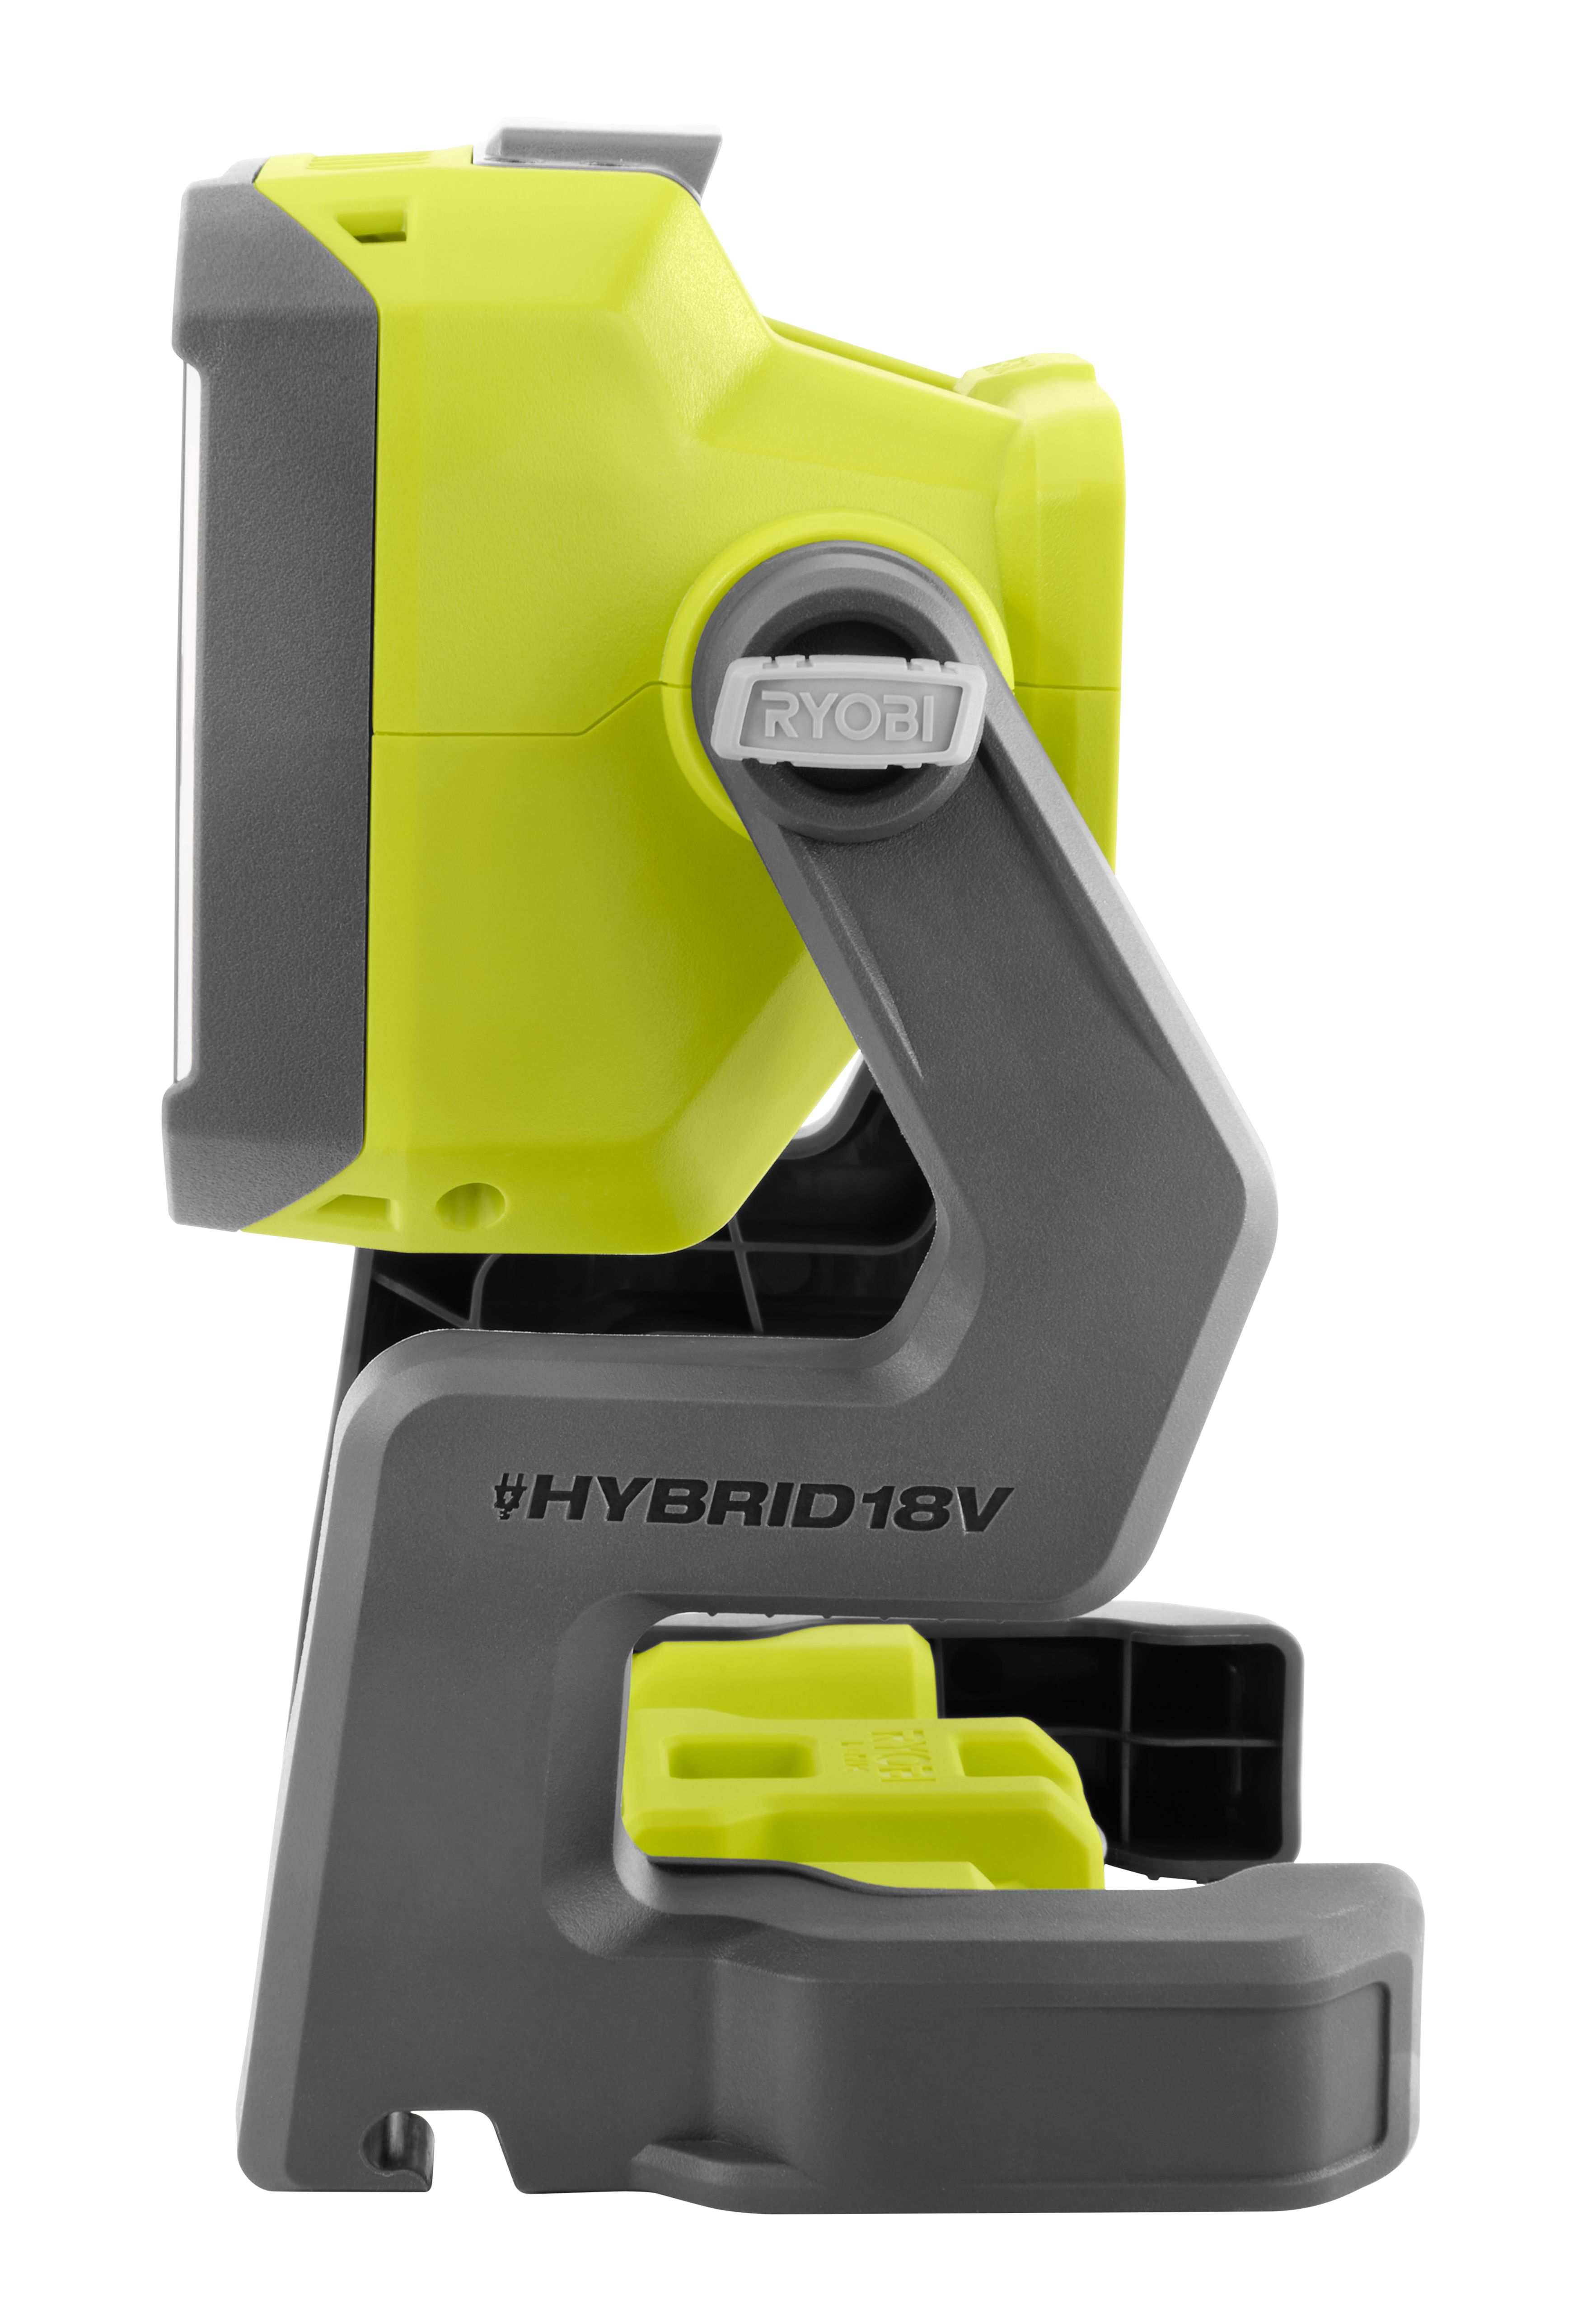 18V ONE+ HYBRID LED WORKLIGHT - RYOBI Tools